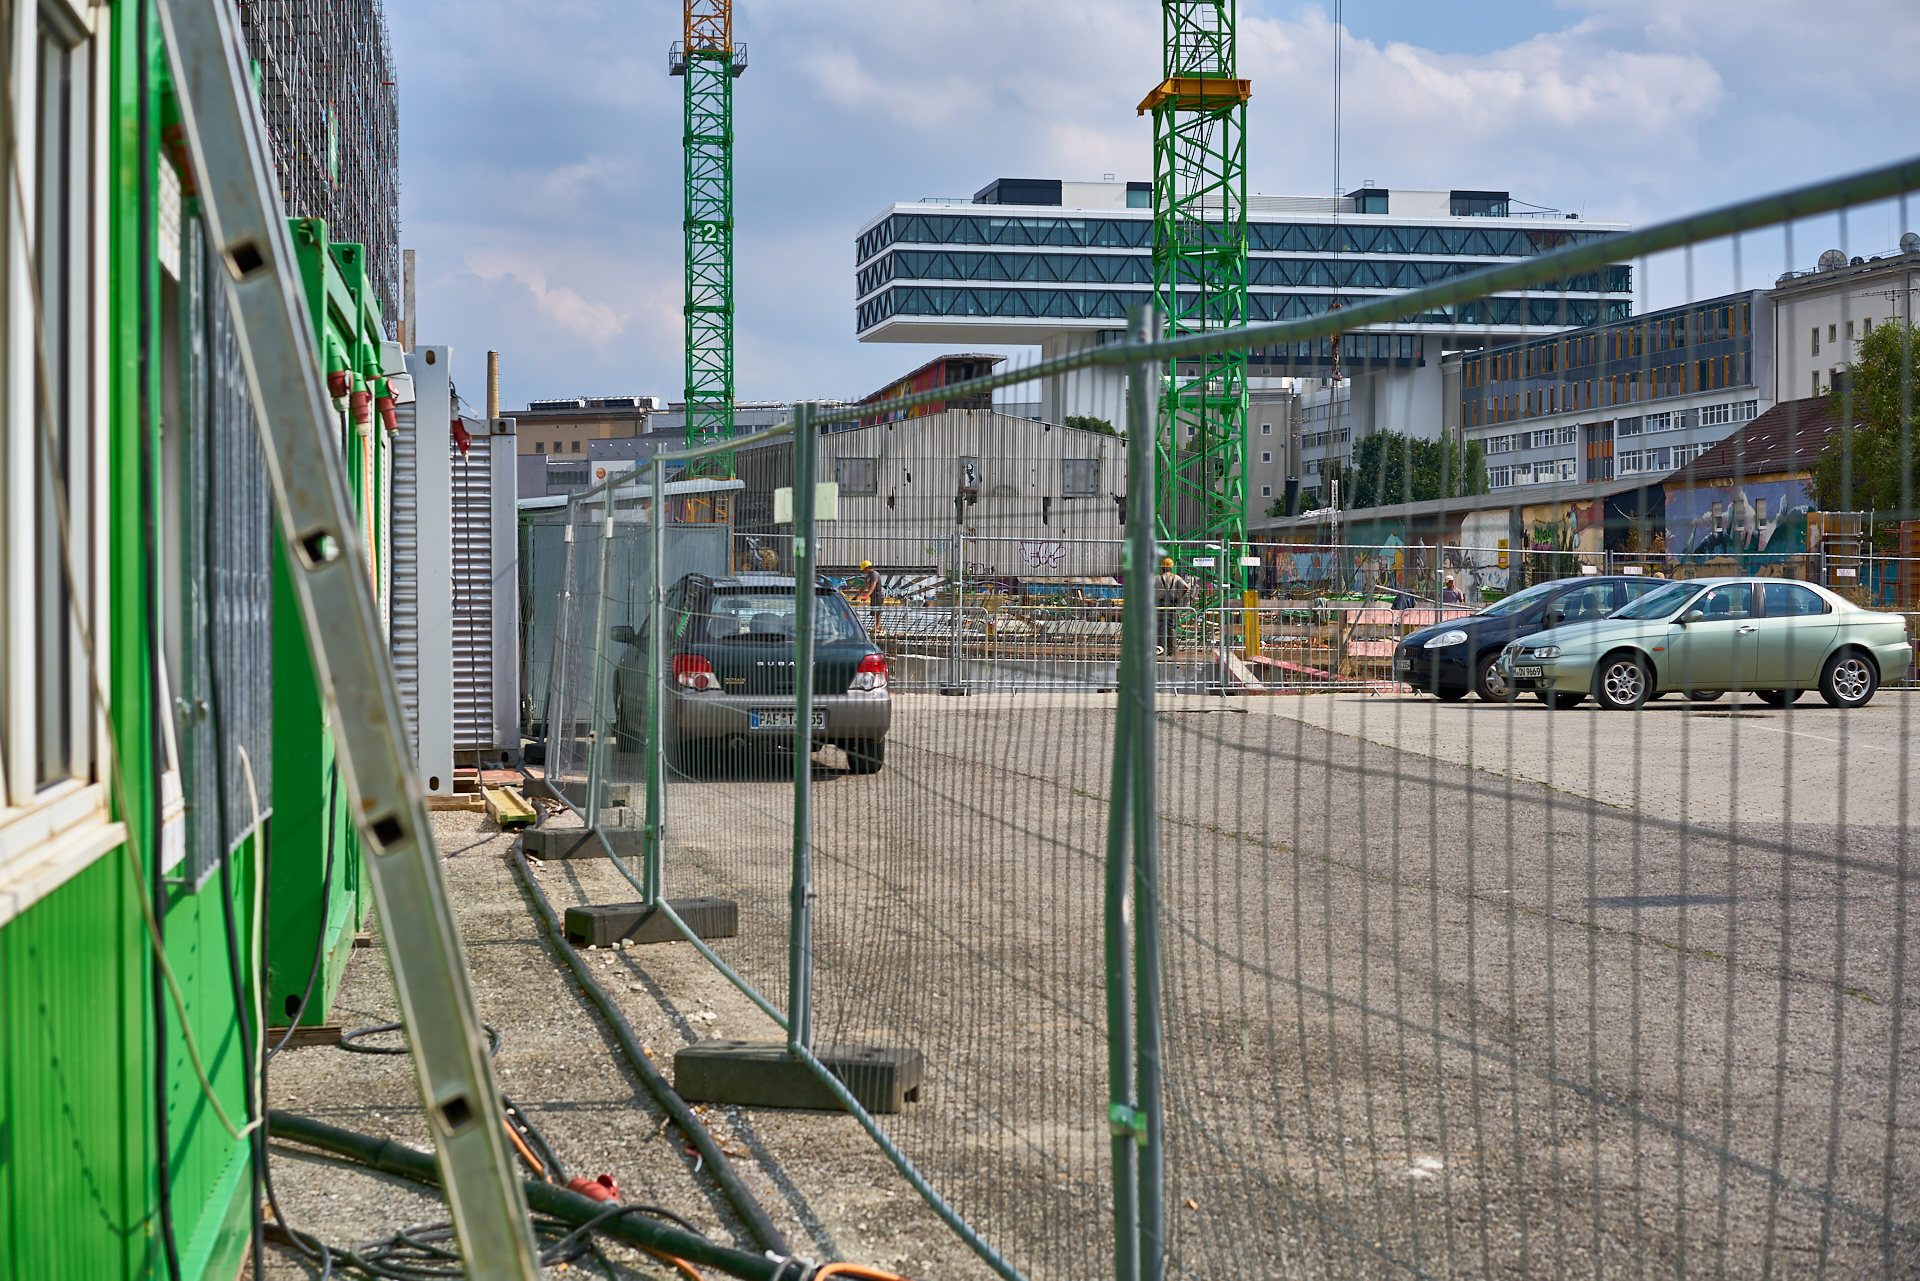 18.08.2015 -  Baustelle Werksgelände und WERK 3